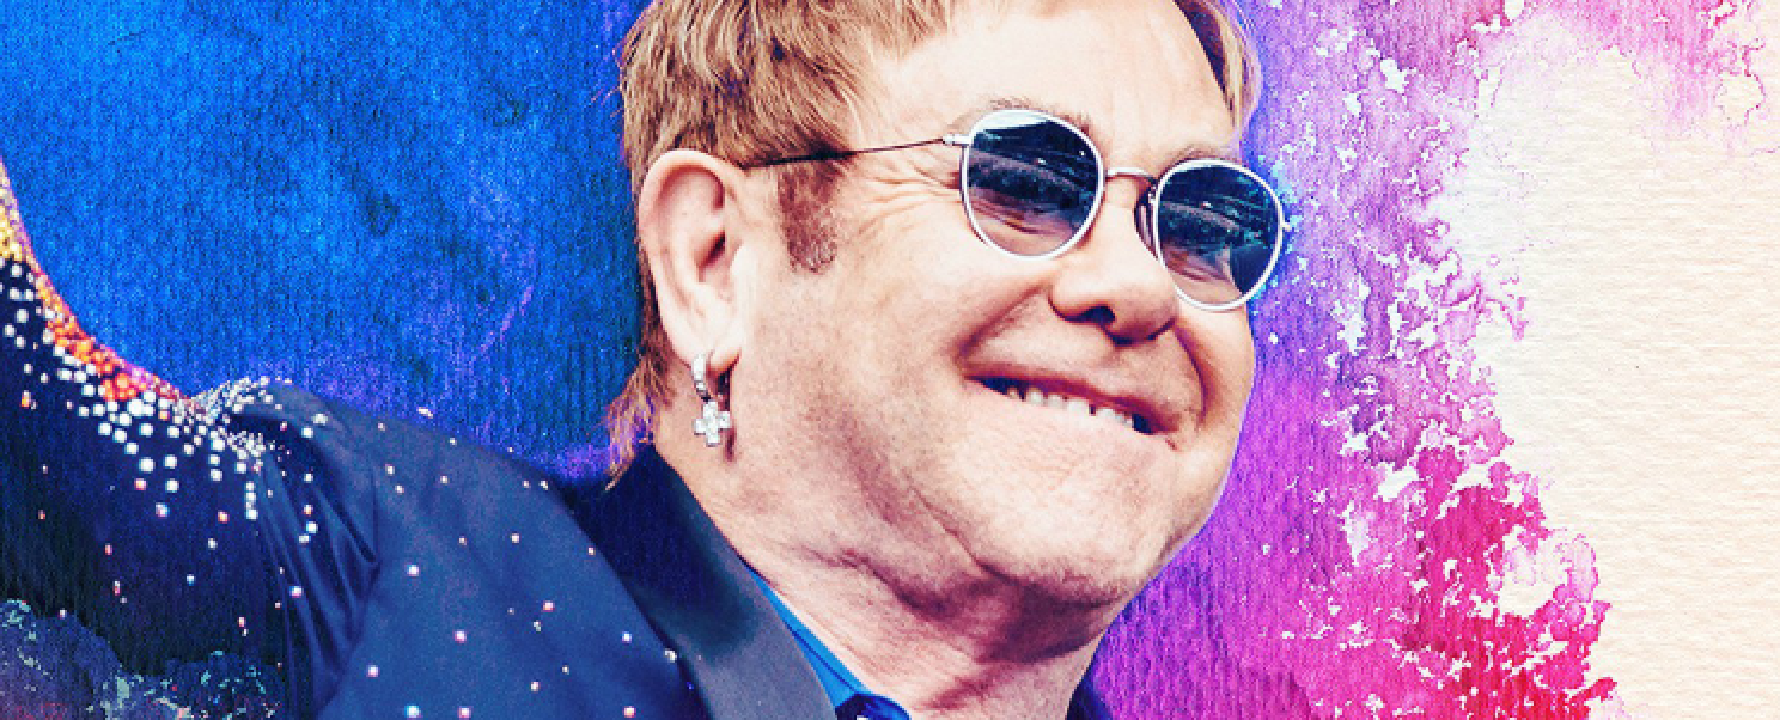 Promofoto von Elton John.